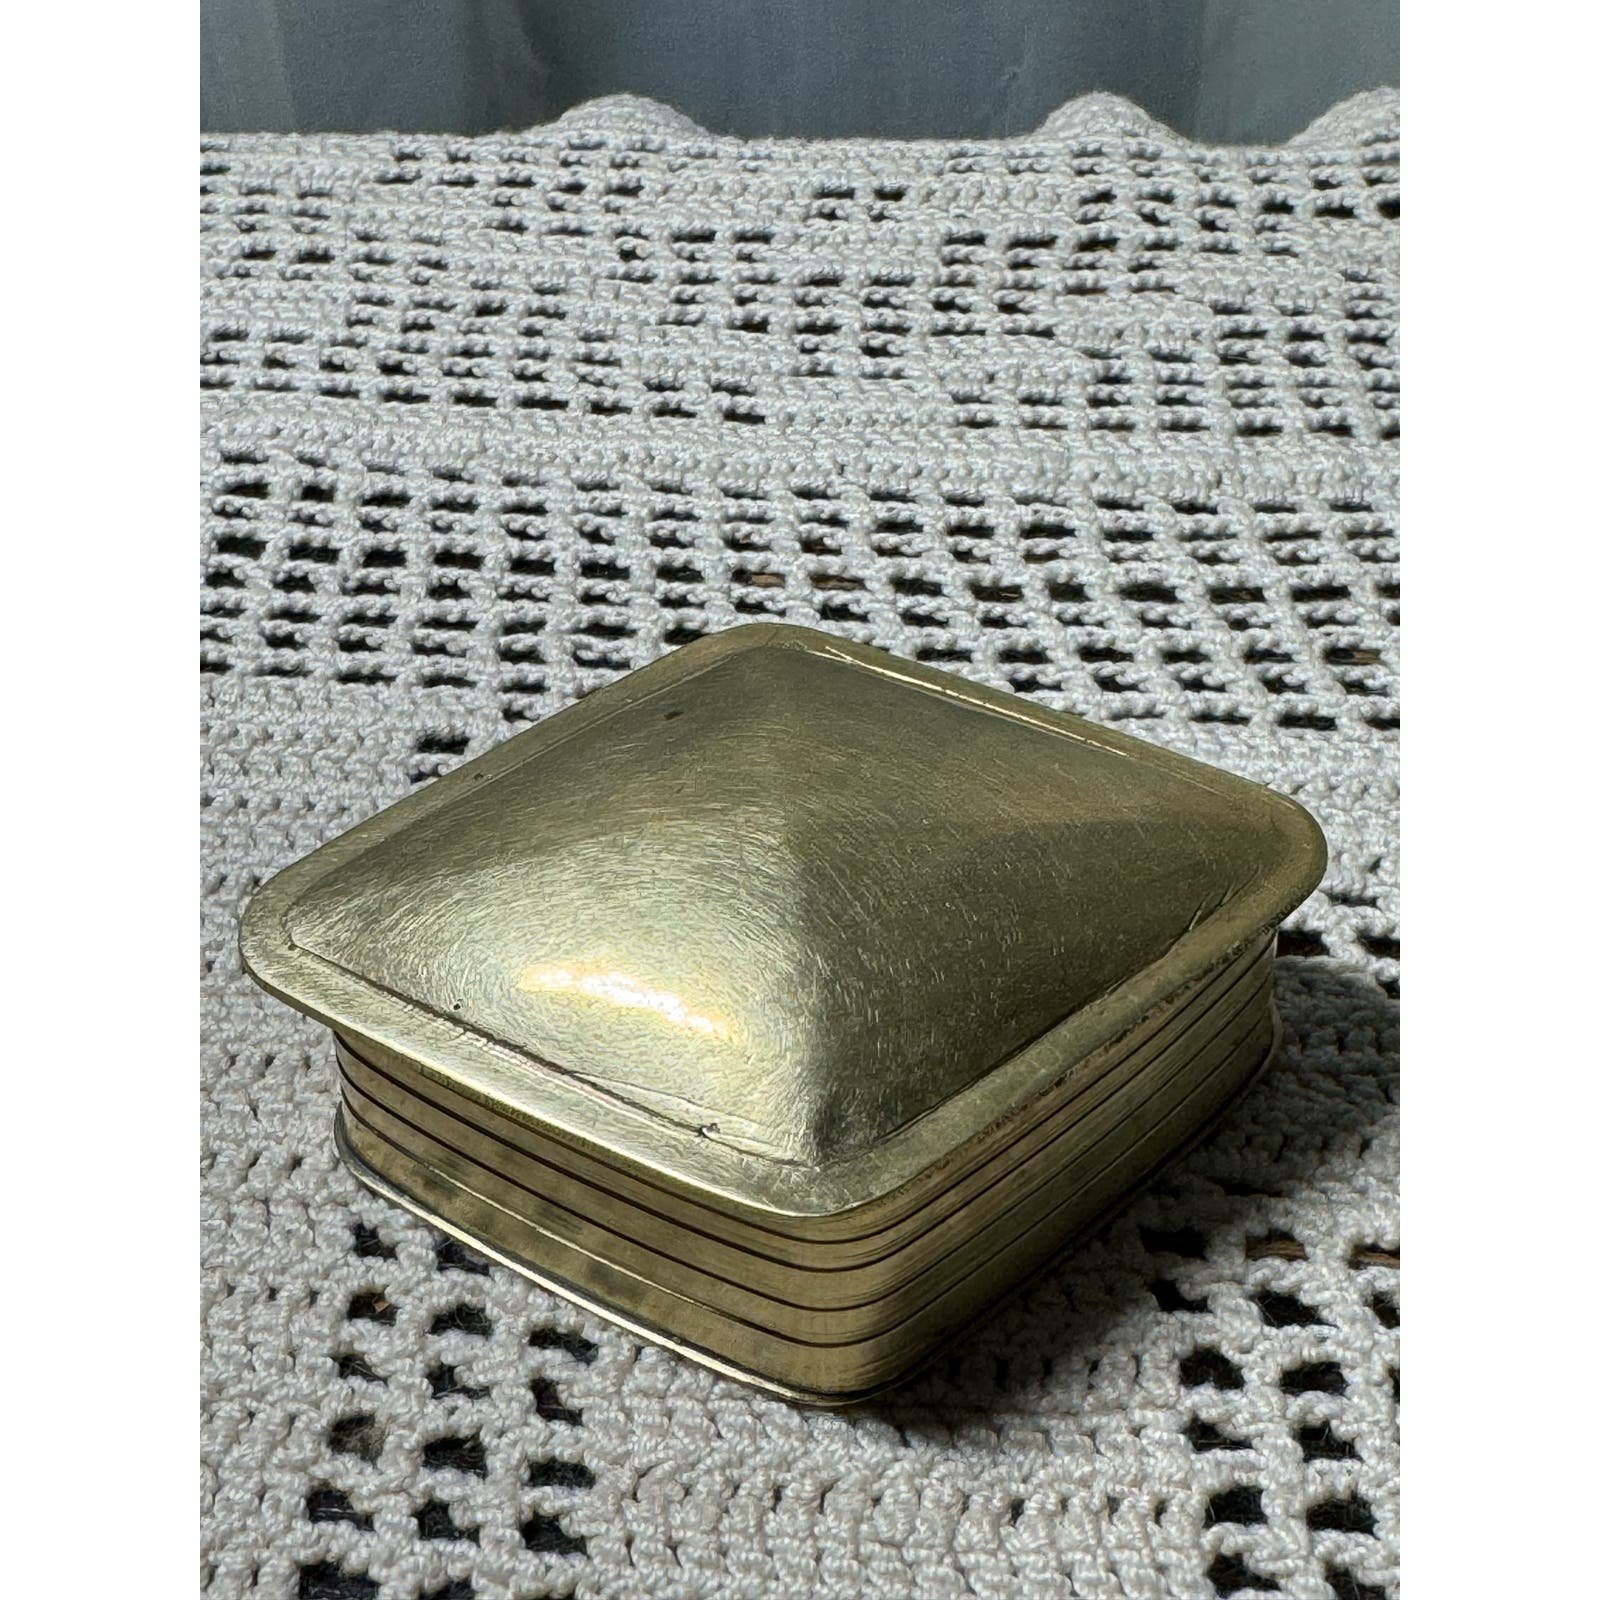 Brass triangle hinged lid trinket box - stamped 91 inside nfeJcIFTA